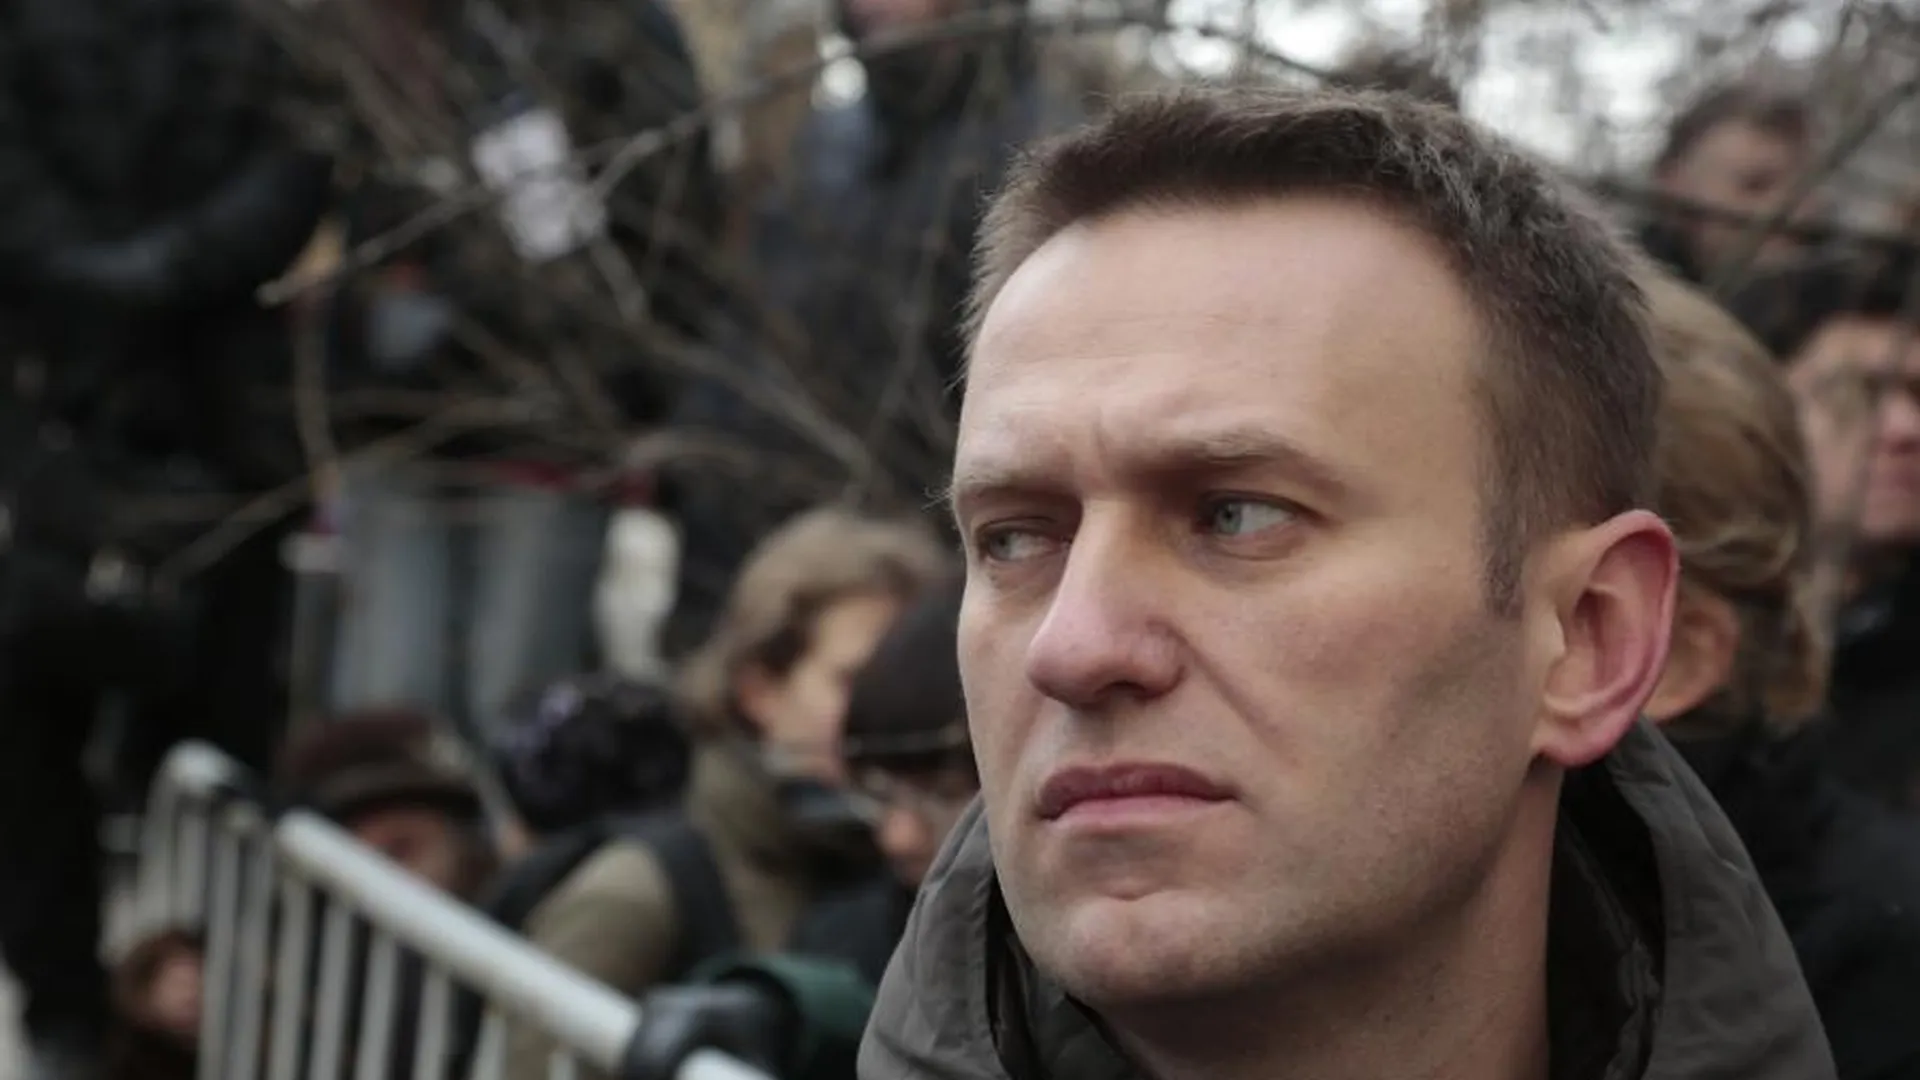 SHOT: похороны Алексея Навального* назначили на 29 февраля в Москве